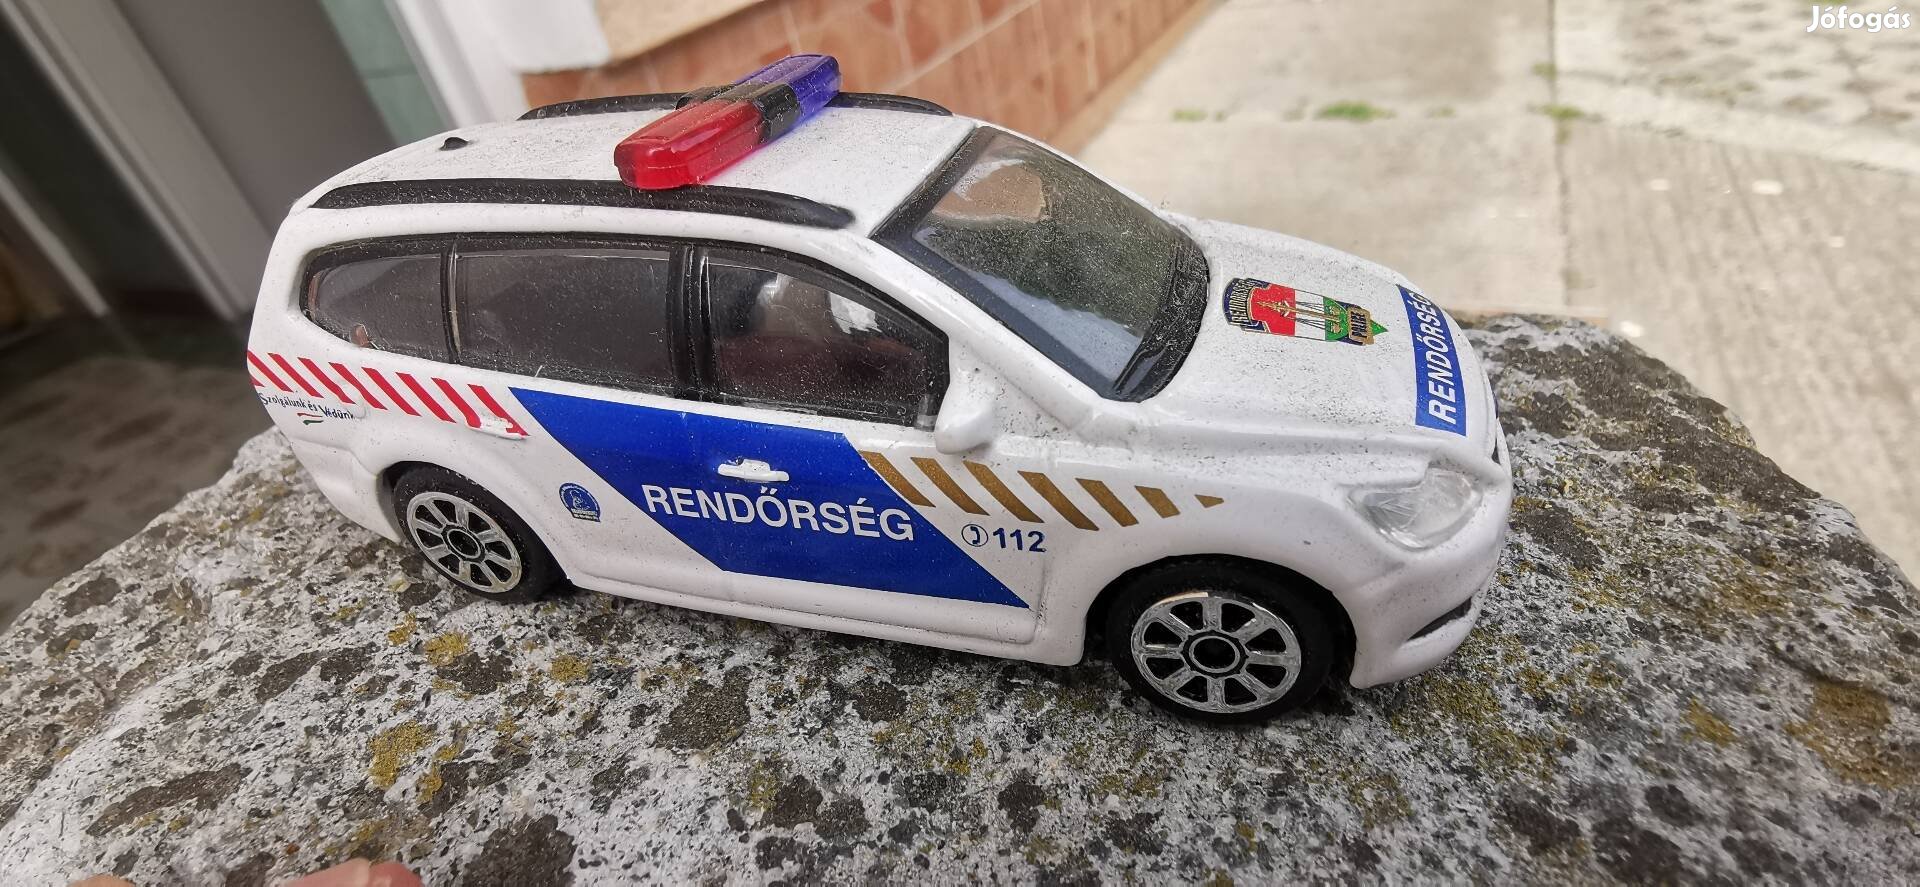 Burago Opel rendőrség autó 